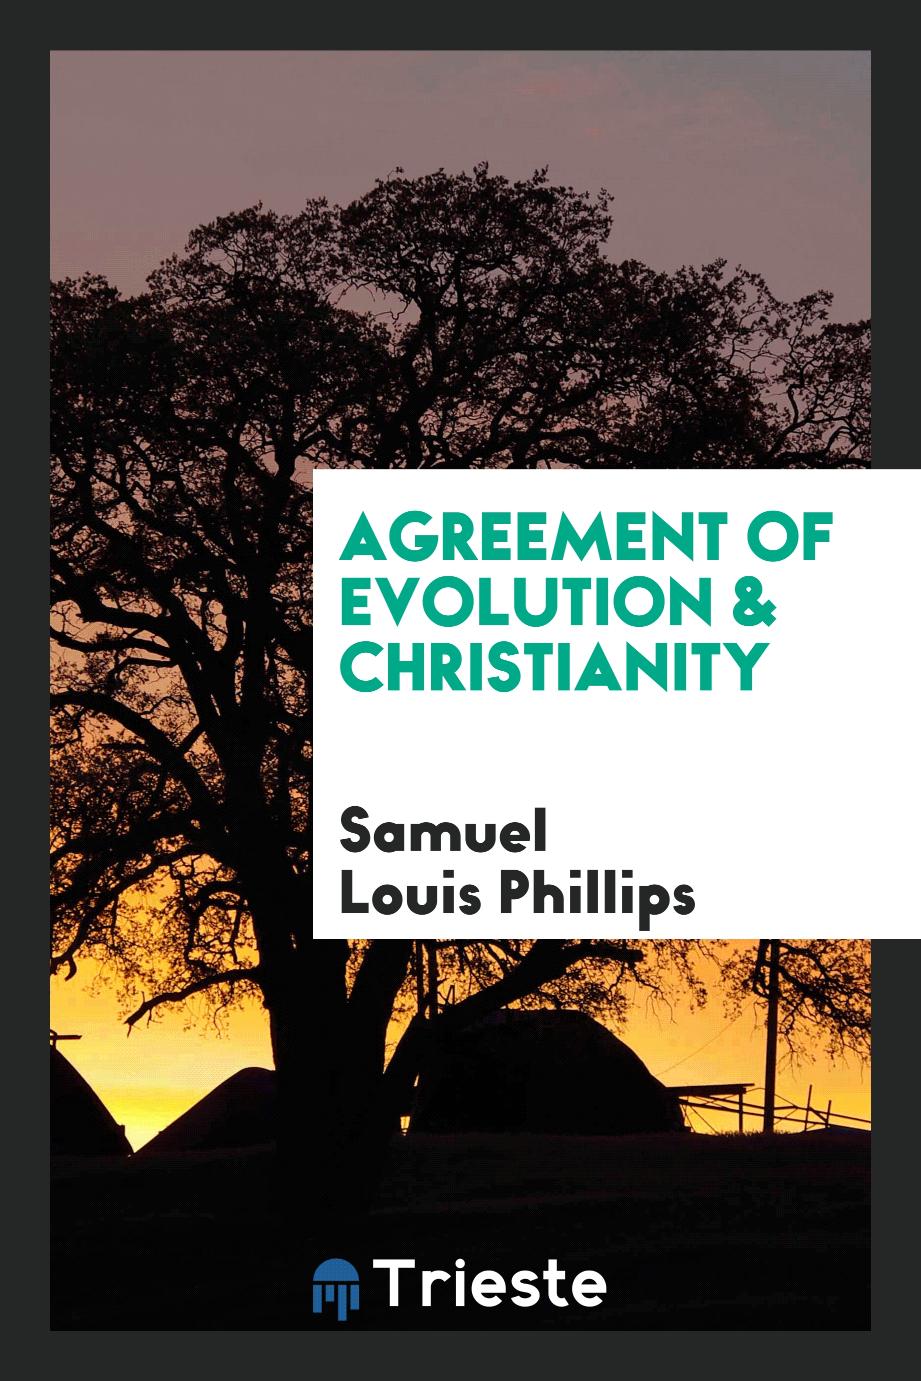 Samuel Louis Phillips - Agreement of evolution & Christianity